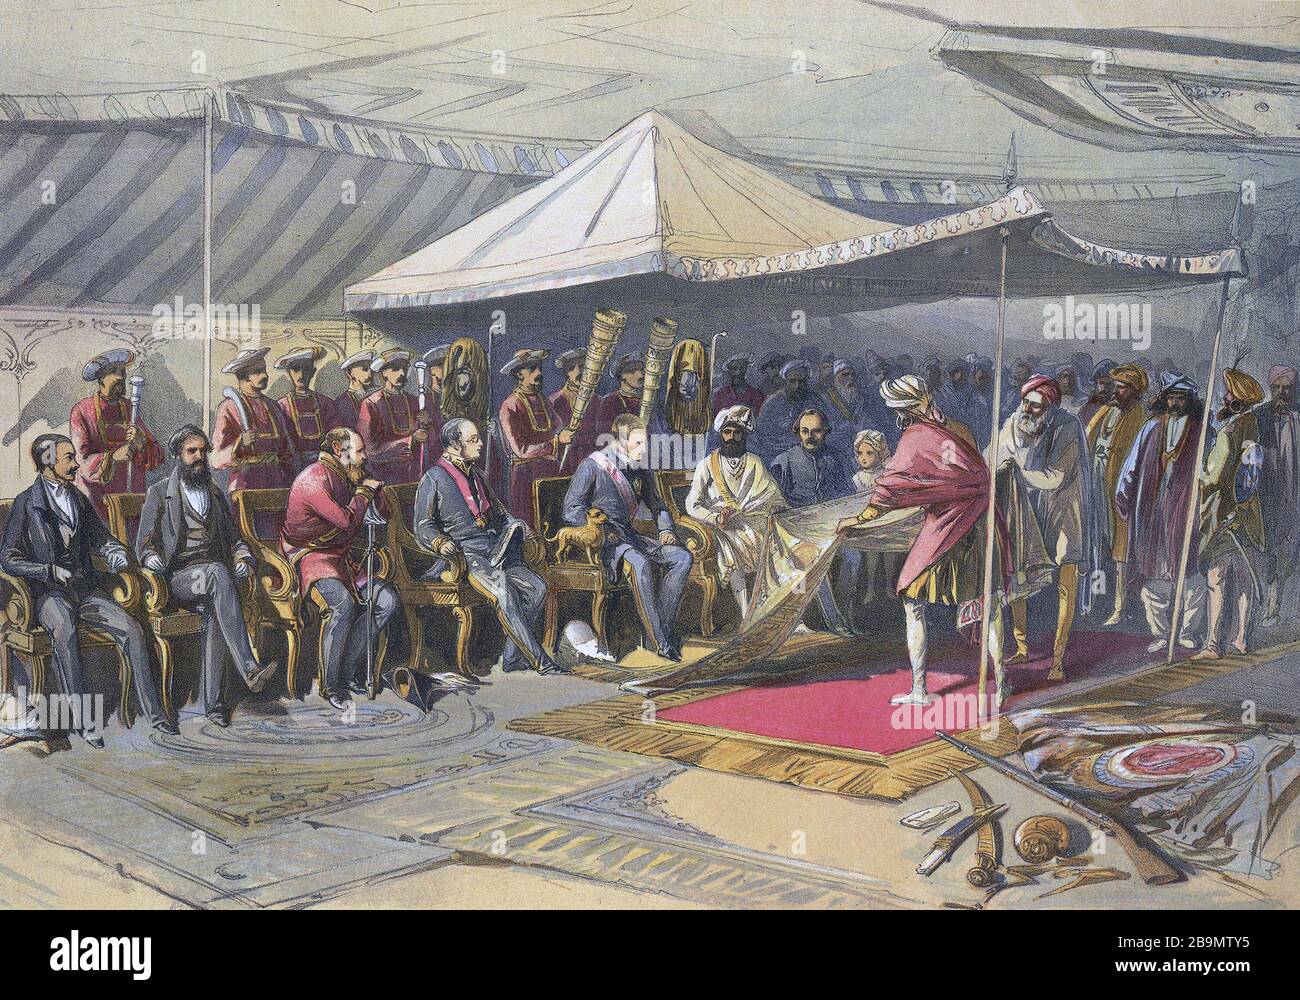 CHARLES CANNING (1812-1862) le gouverneur général de l'Inde a rencontré Maharaja Ranbir Singh de Jammu et Kashmire en 1860 après la Mutiny Sepoy de 1857 dans laquelle il s'est joint aux Britanniques. Banque D'Images